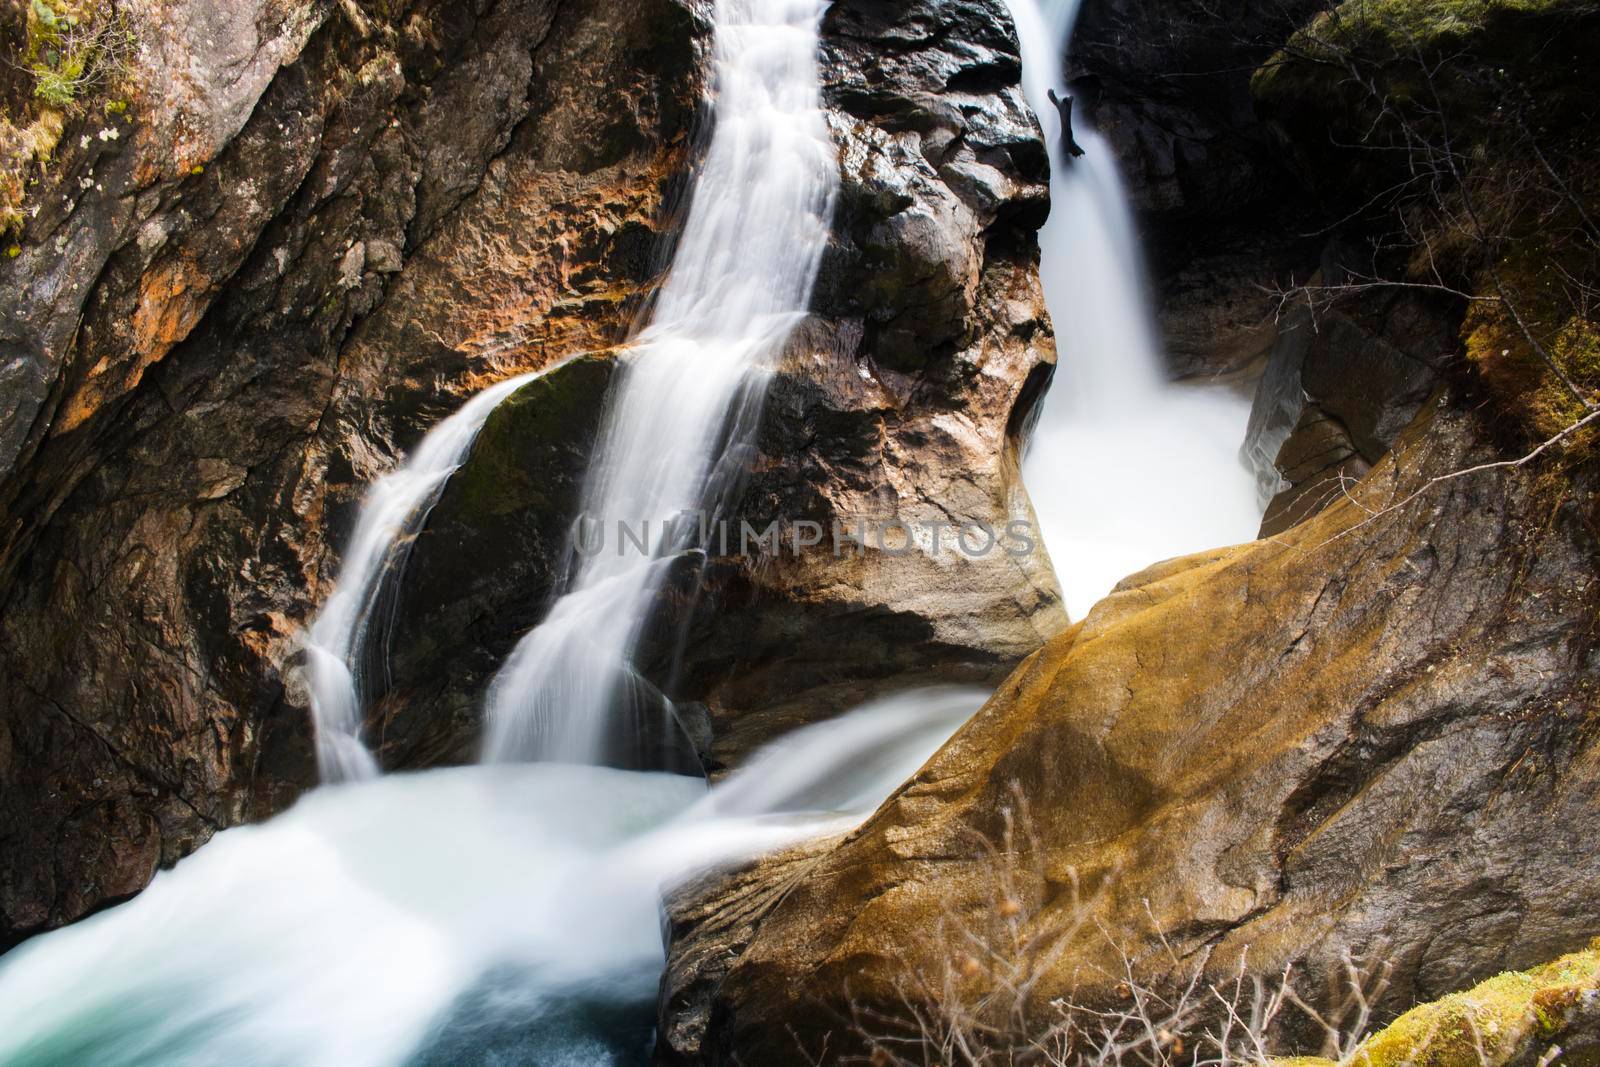 Krimmler waterfall in Austria by ValentimePix